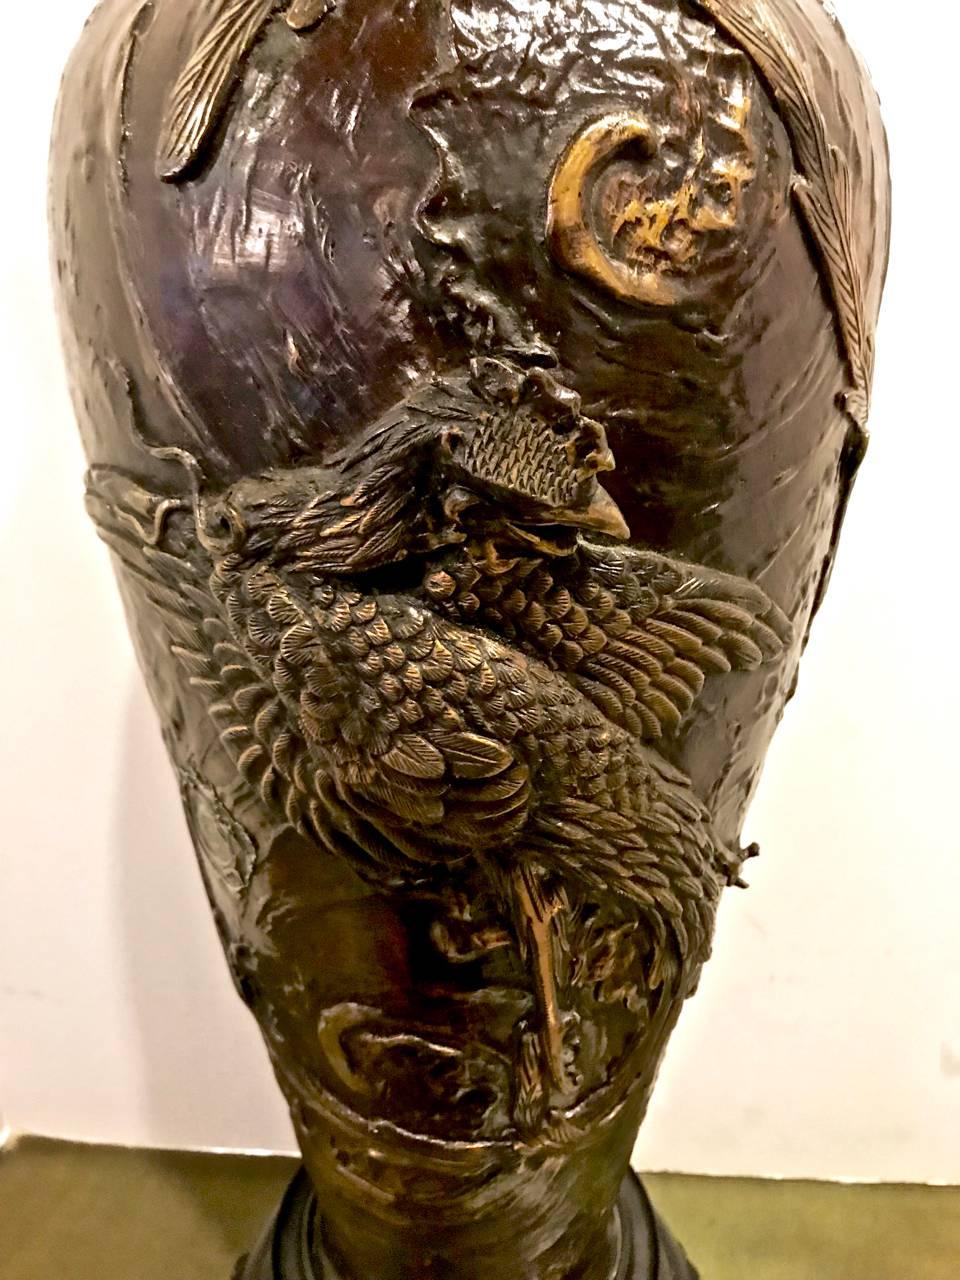 Dies ist ein hervorragendes Beispiel für eine große japanische Bronzevase aus der Meiji-Zeit, die jetzt als Lampe dient. Die Vase ist mit Hochrelief und fein detaillierten Hähnen und flammenden Perlen gegossen. Jedes Detail ist fein gegossen und von